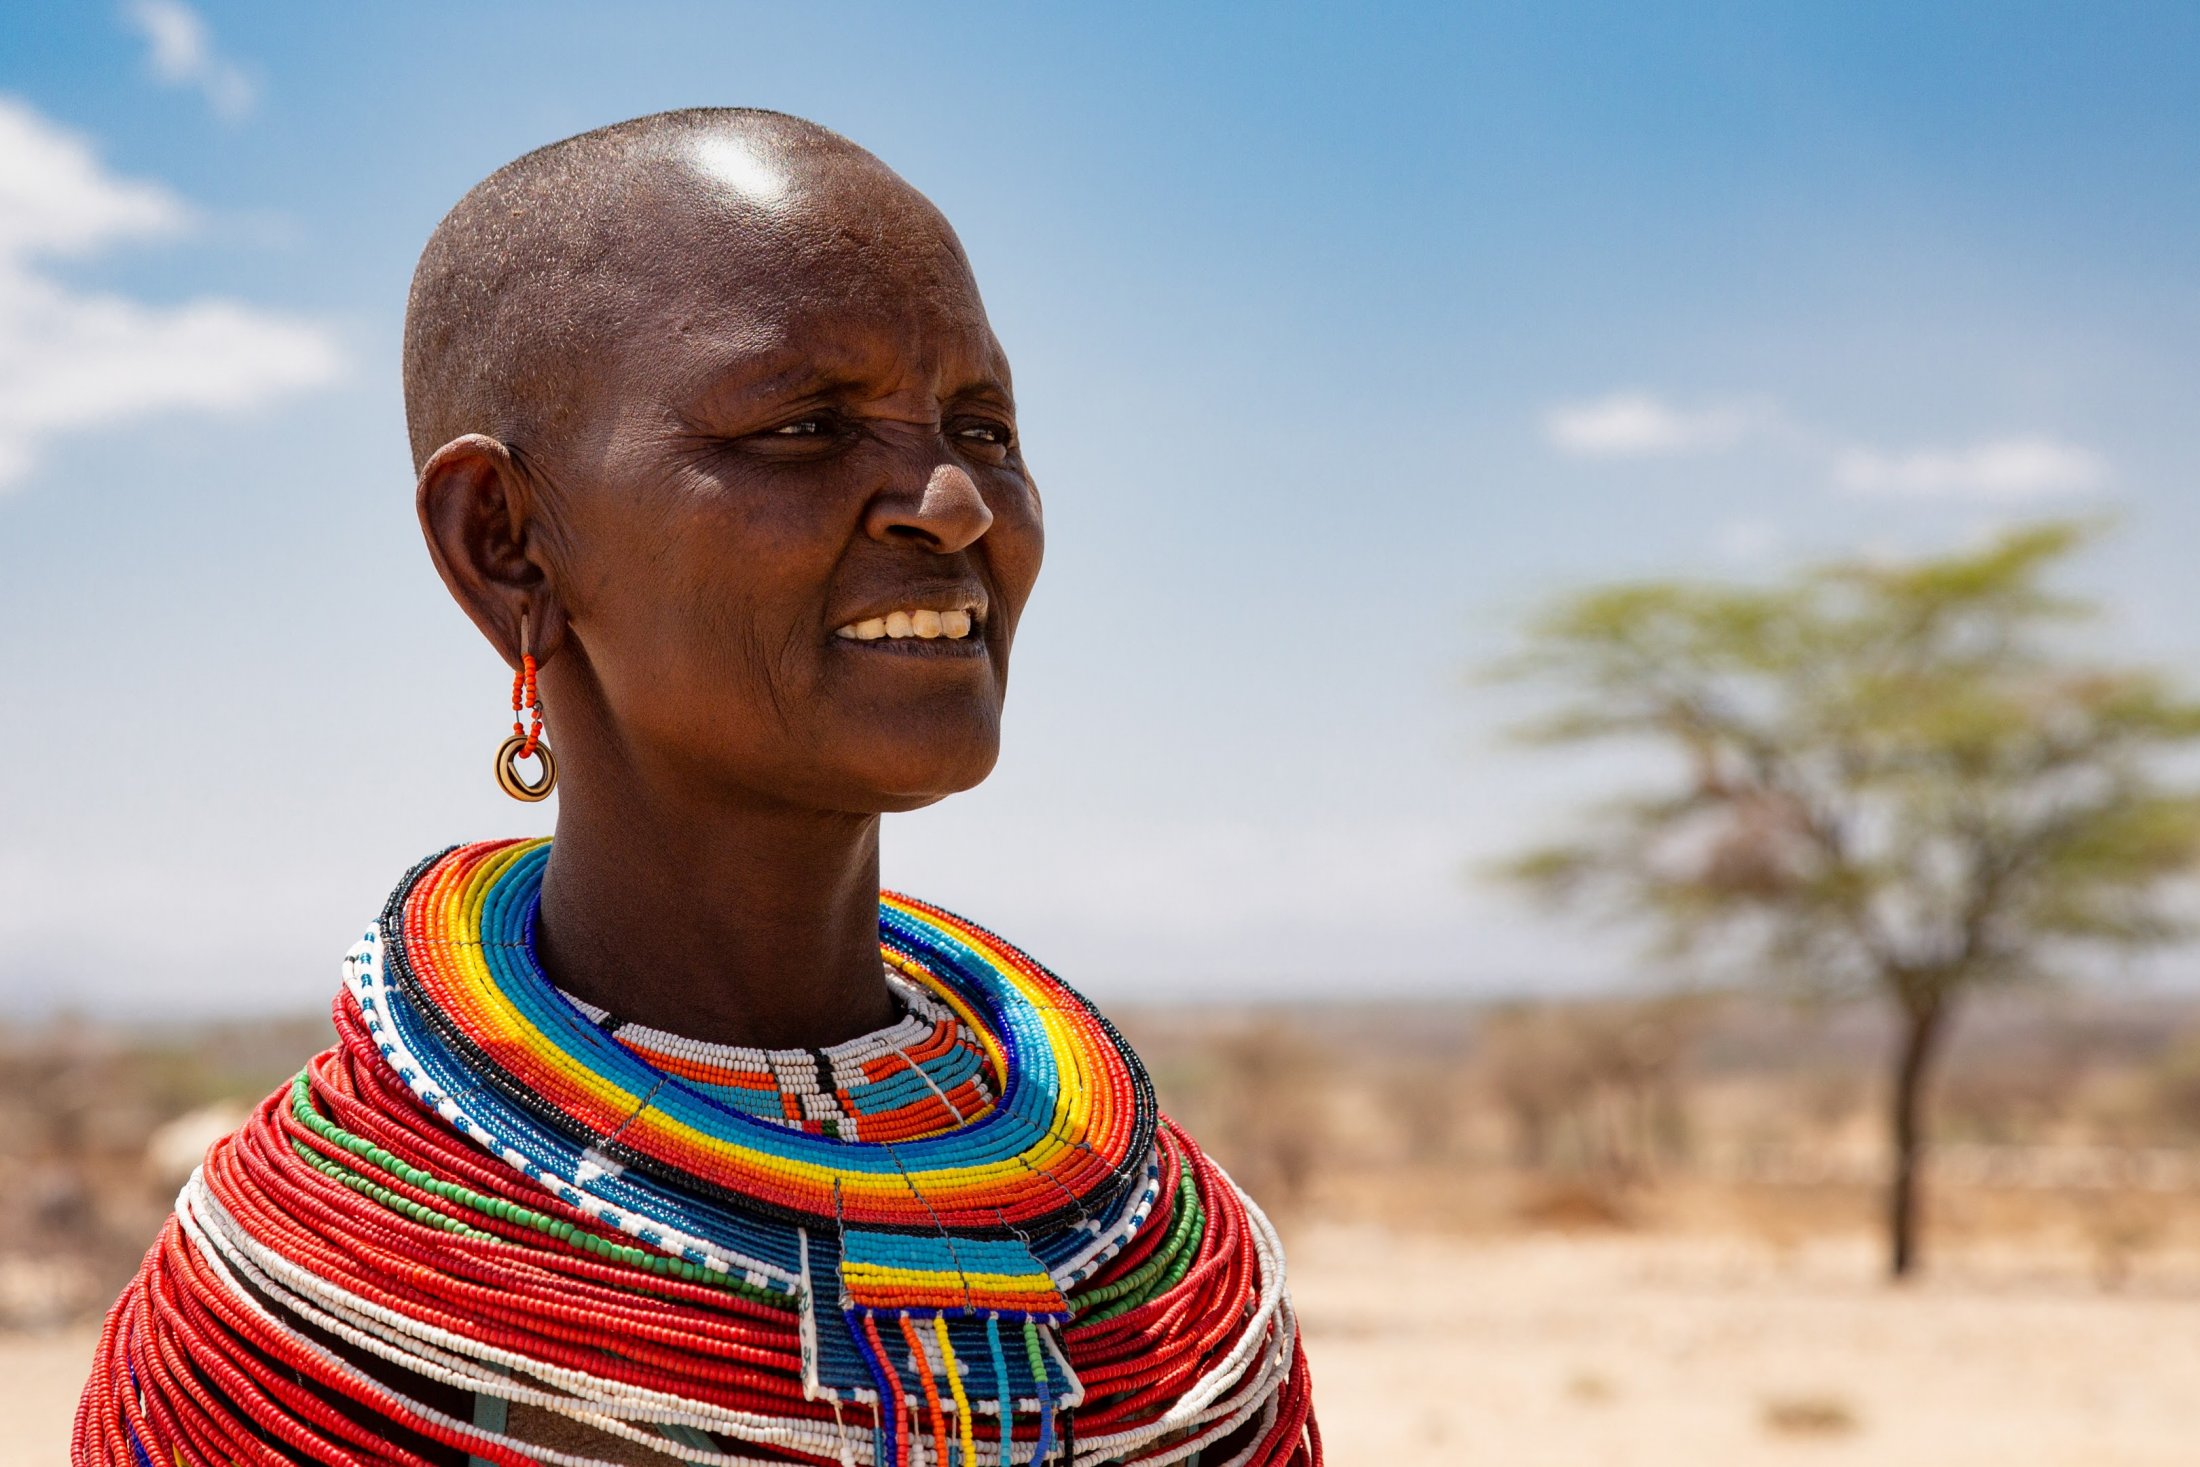 B3 - Kobieta z ludu Samburu, północna Kenia, wrzesień 2021